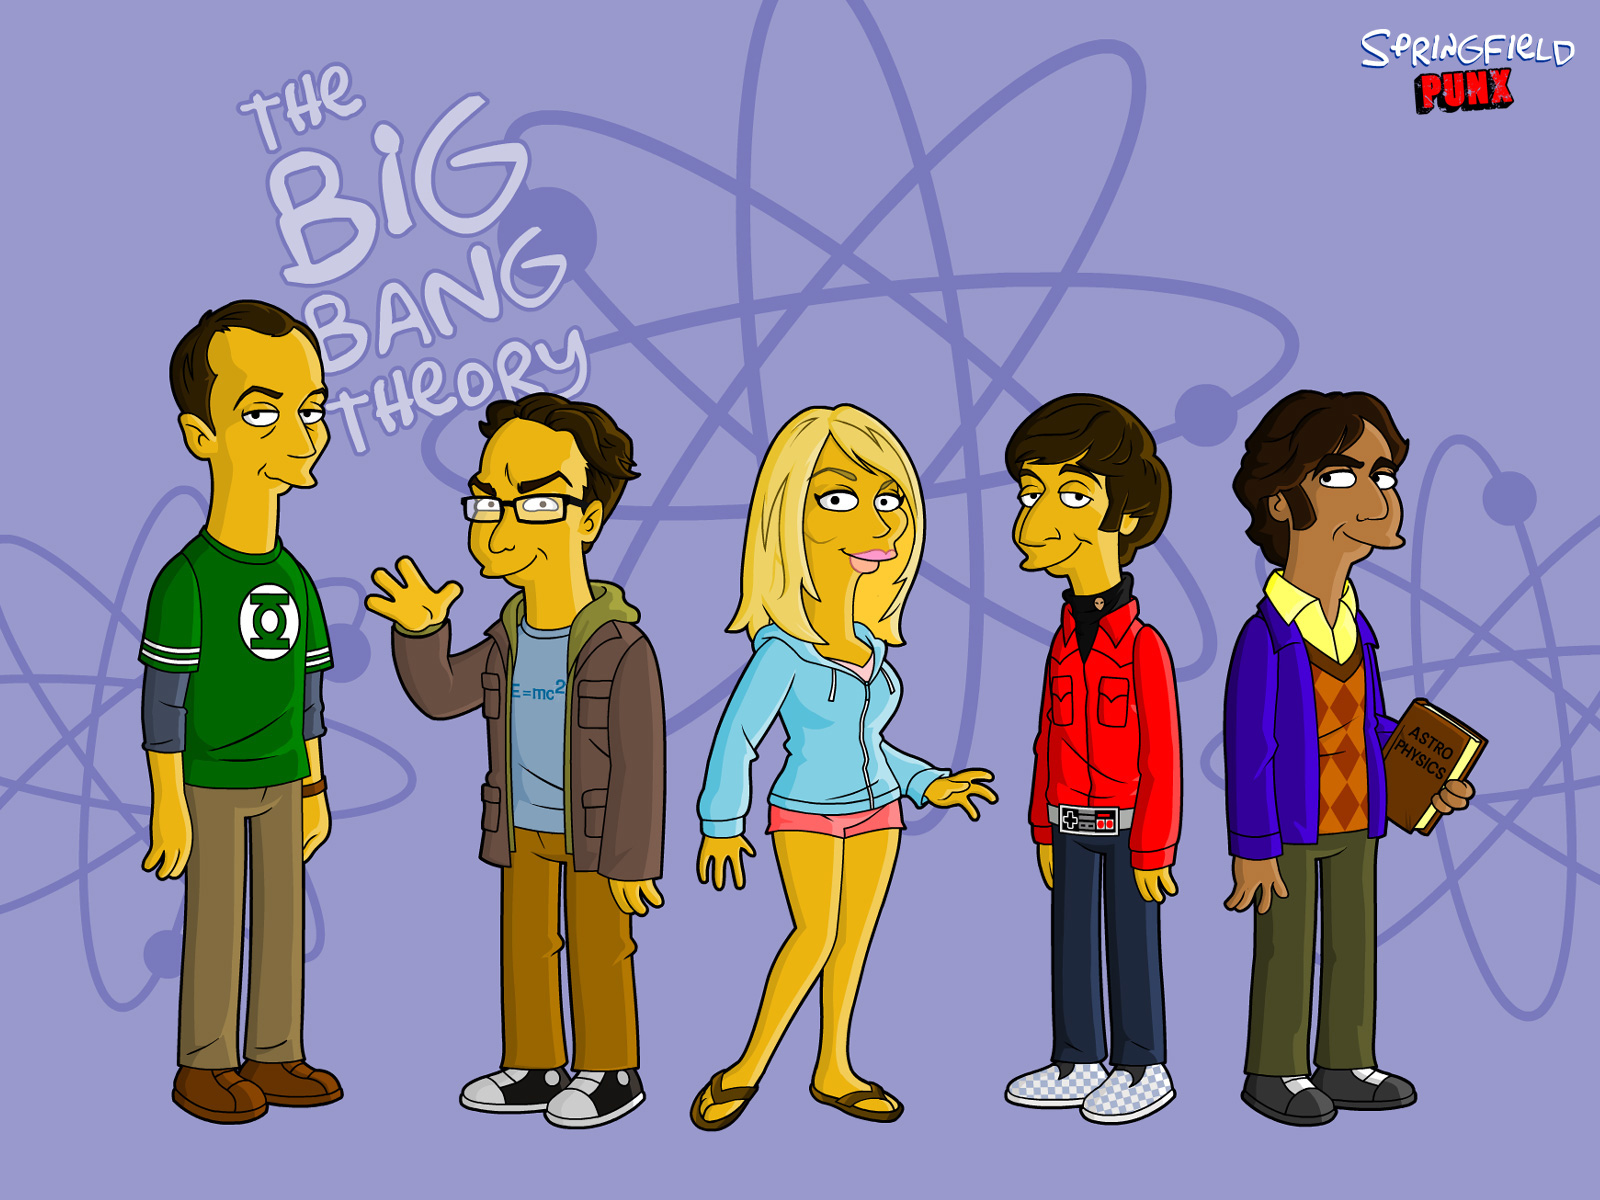 big, Bang, Theory, The, Simpsons Wallpaper